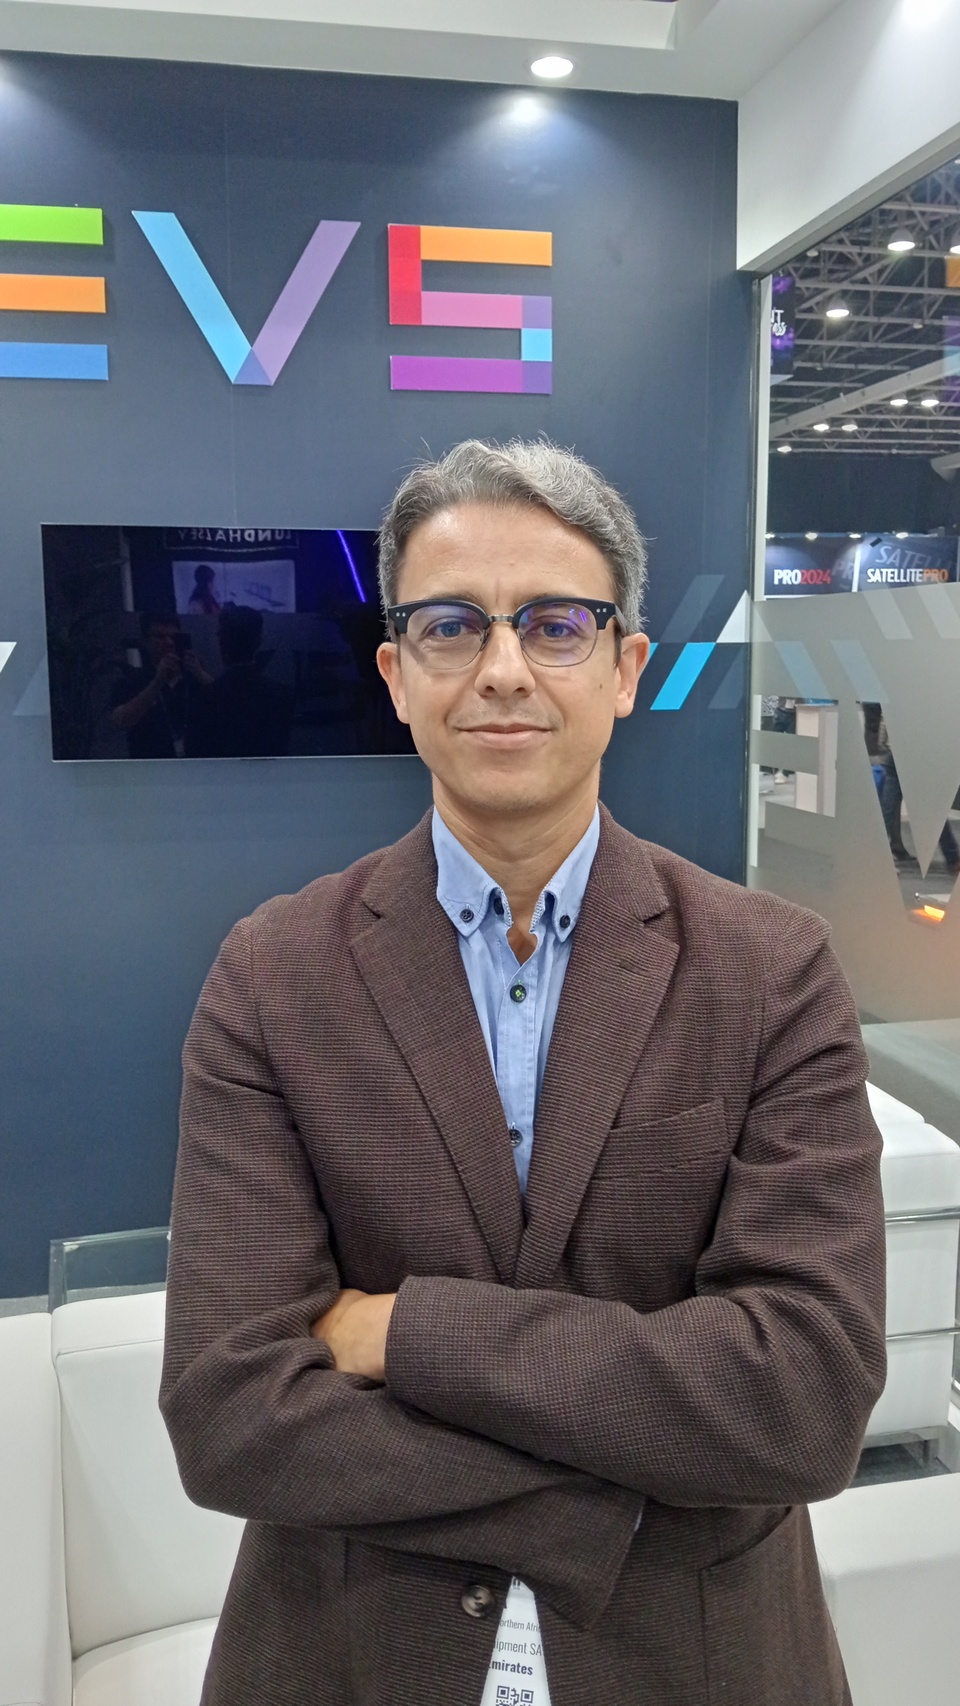 Эксклюзивное интервью с Мохаммедом Буитой (Mohammed Bouita), вице-президентом EVS Broadcast Equipment по продажам на Ближнем Востоке и в Северной Африке